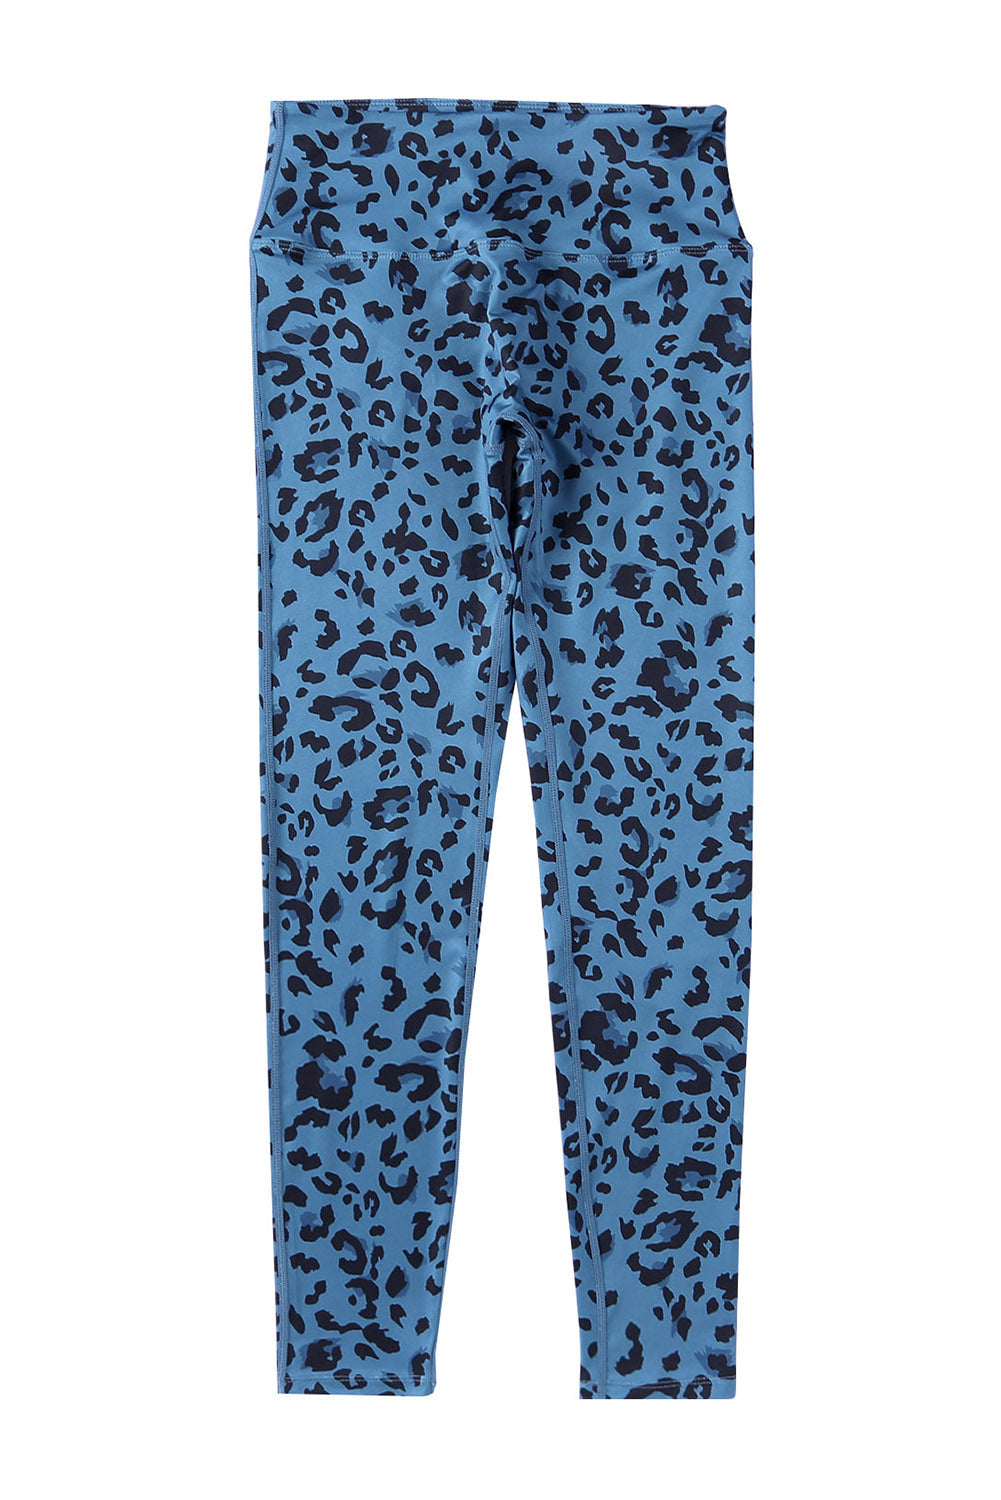 Legging actif bleu classique à imprimé léopard